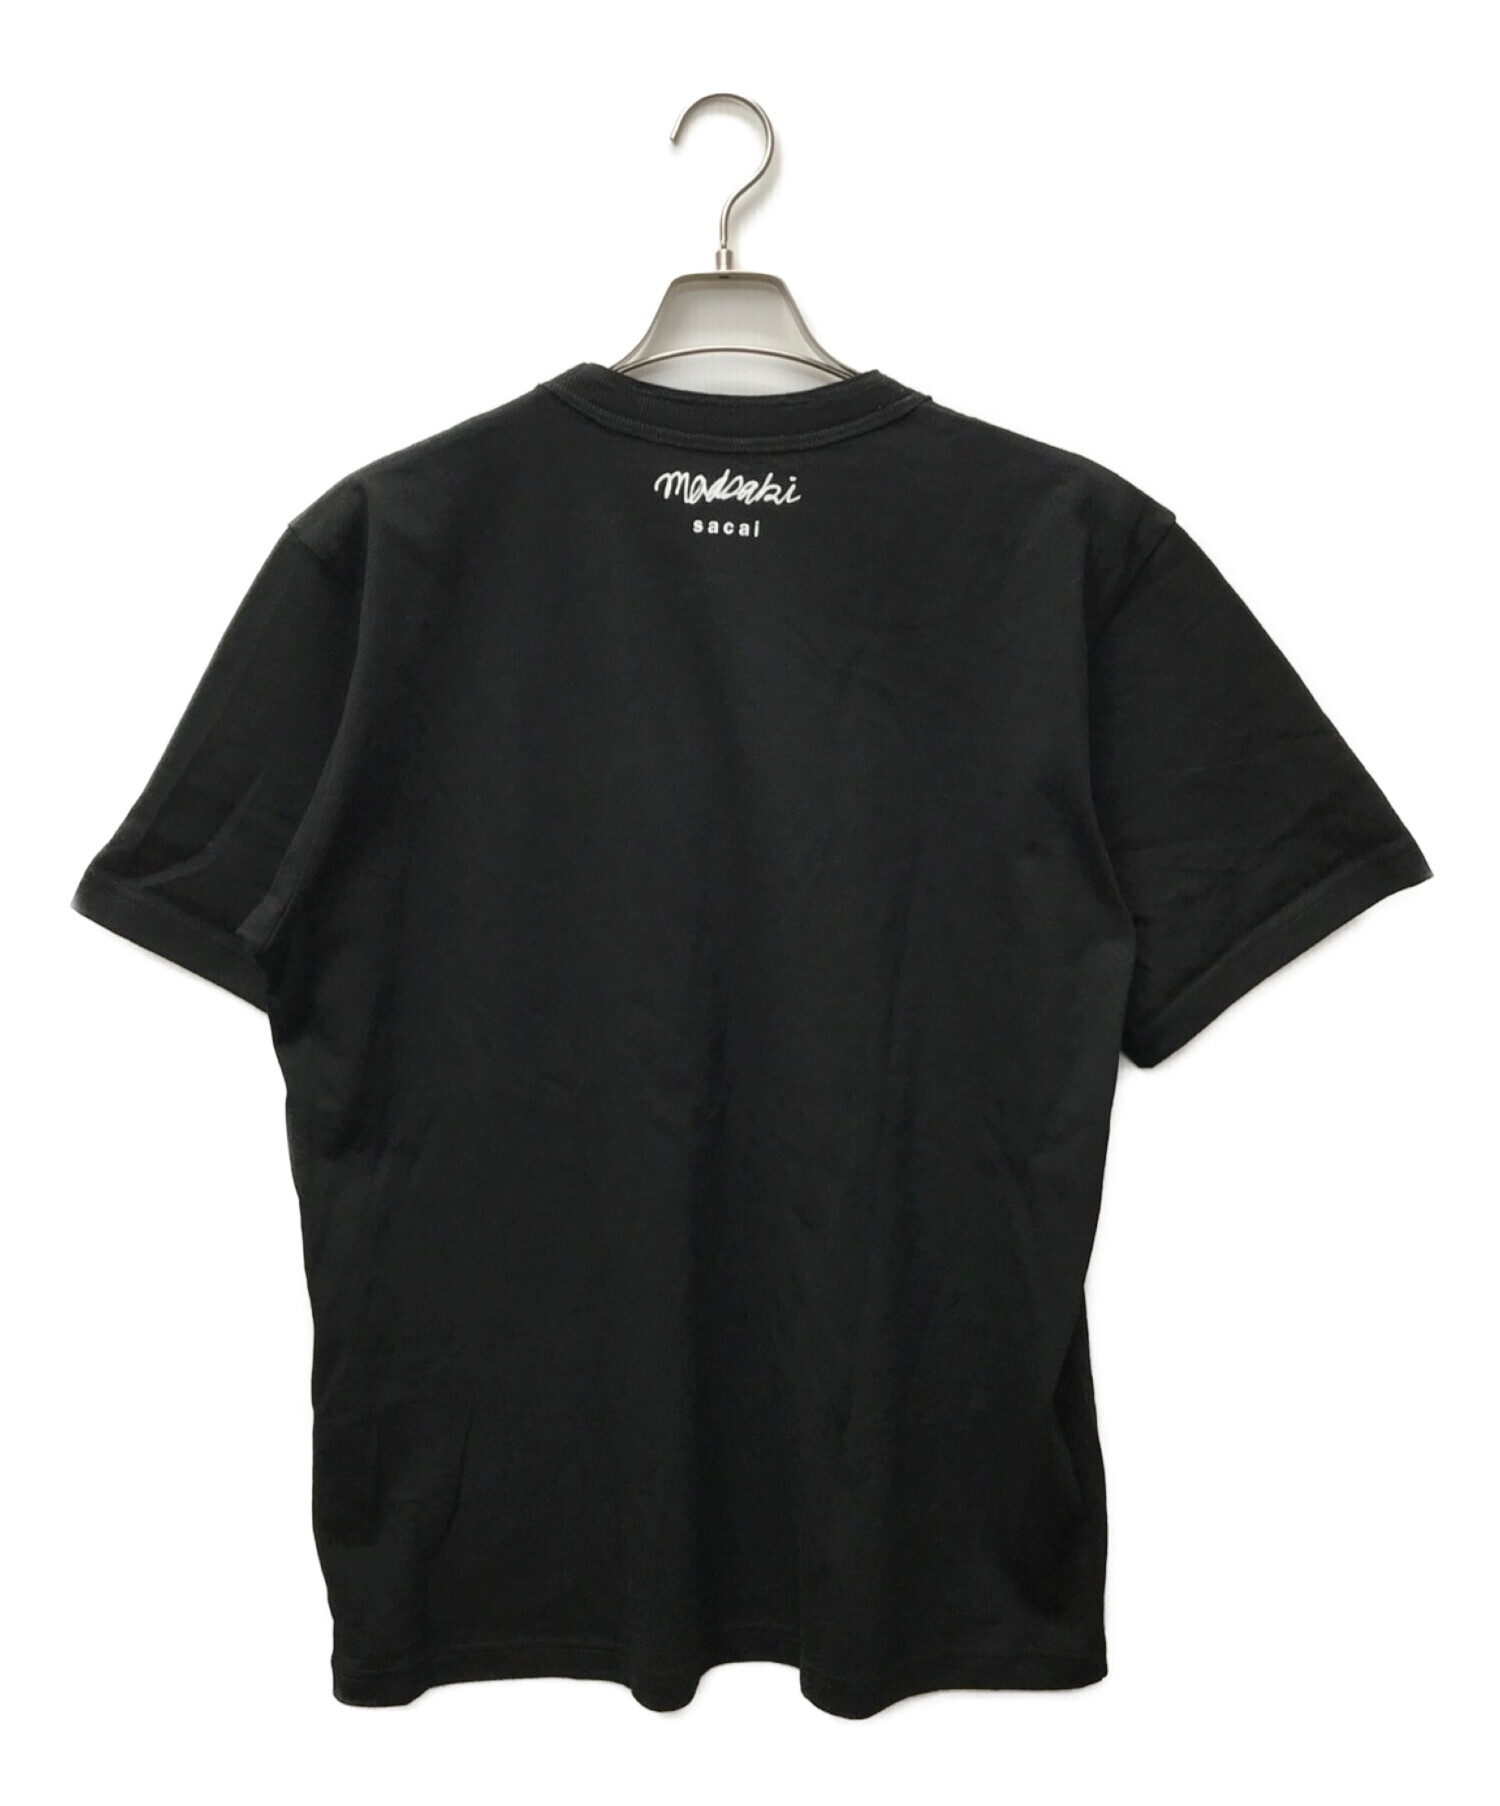 新品 サイズ4 sacai x KAWS Flock Print Tシャツ 黒